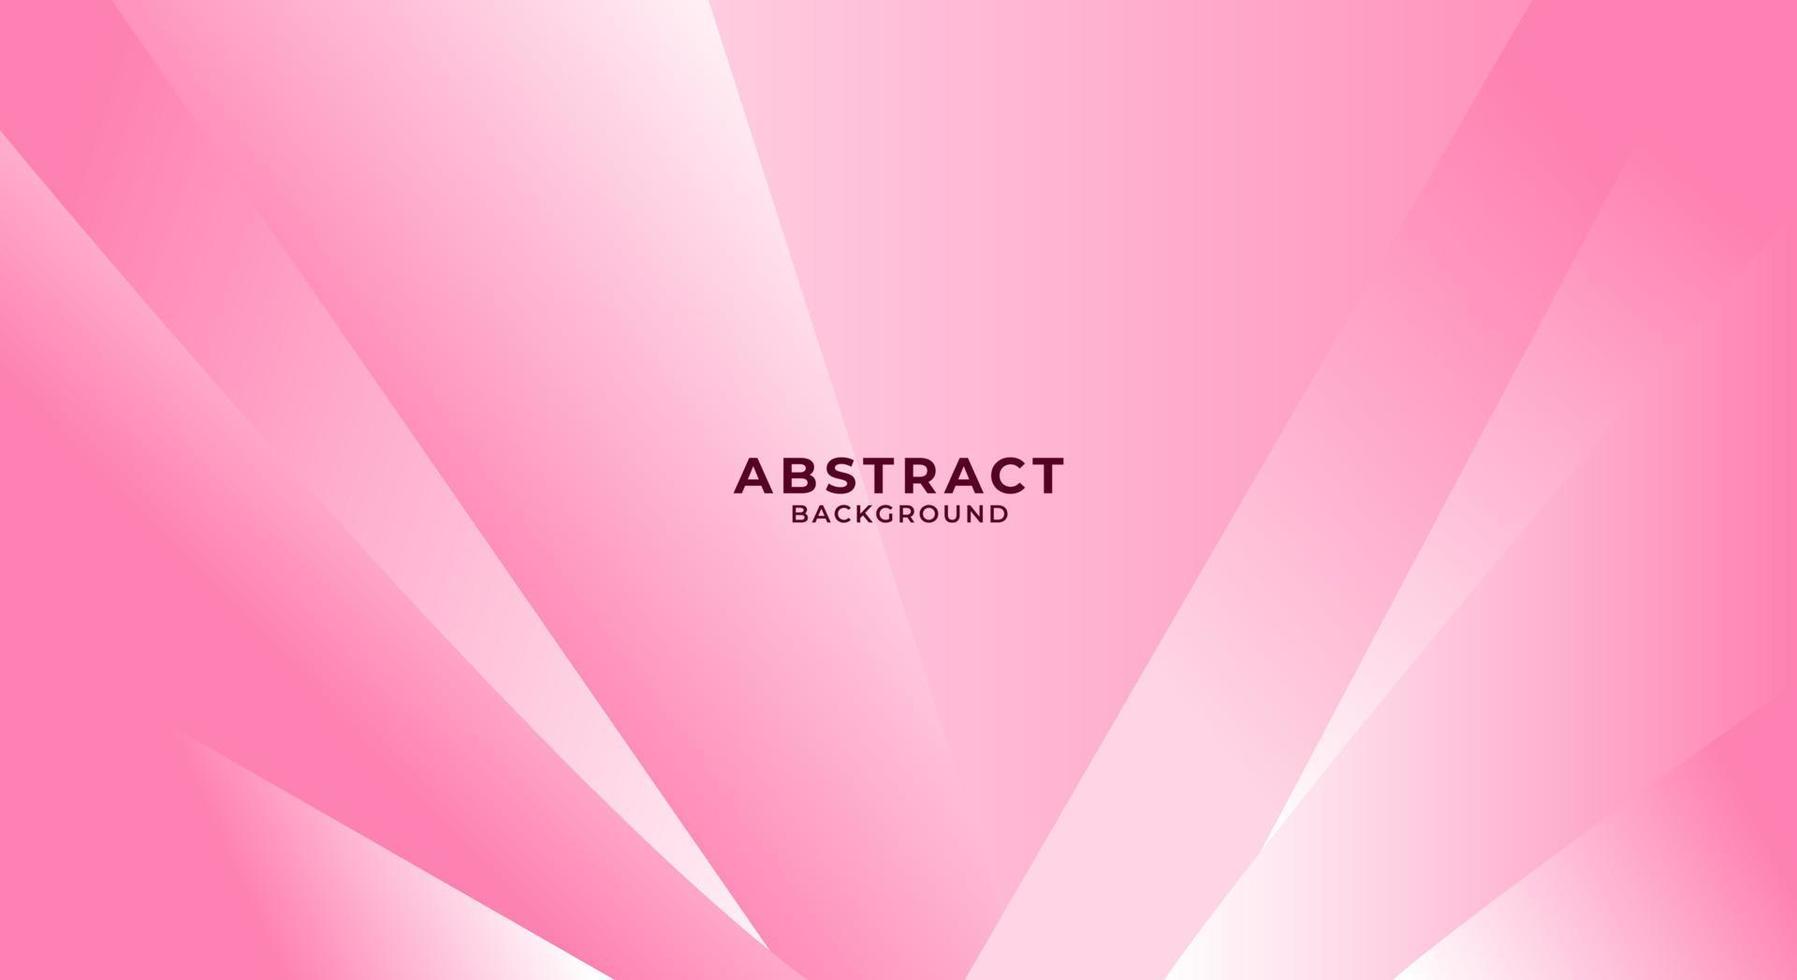 sfondo astratto moderno rosa tenue elegante vettore